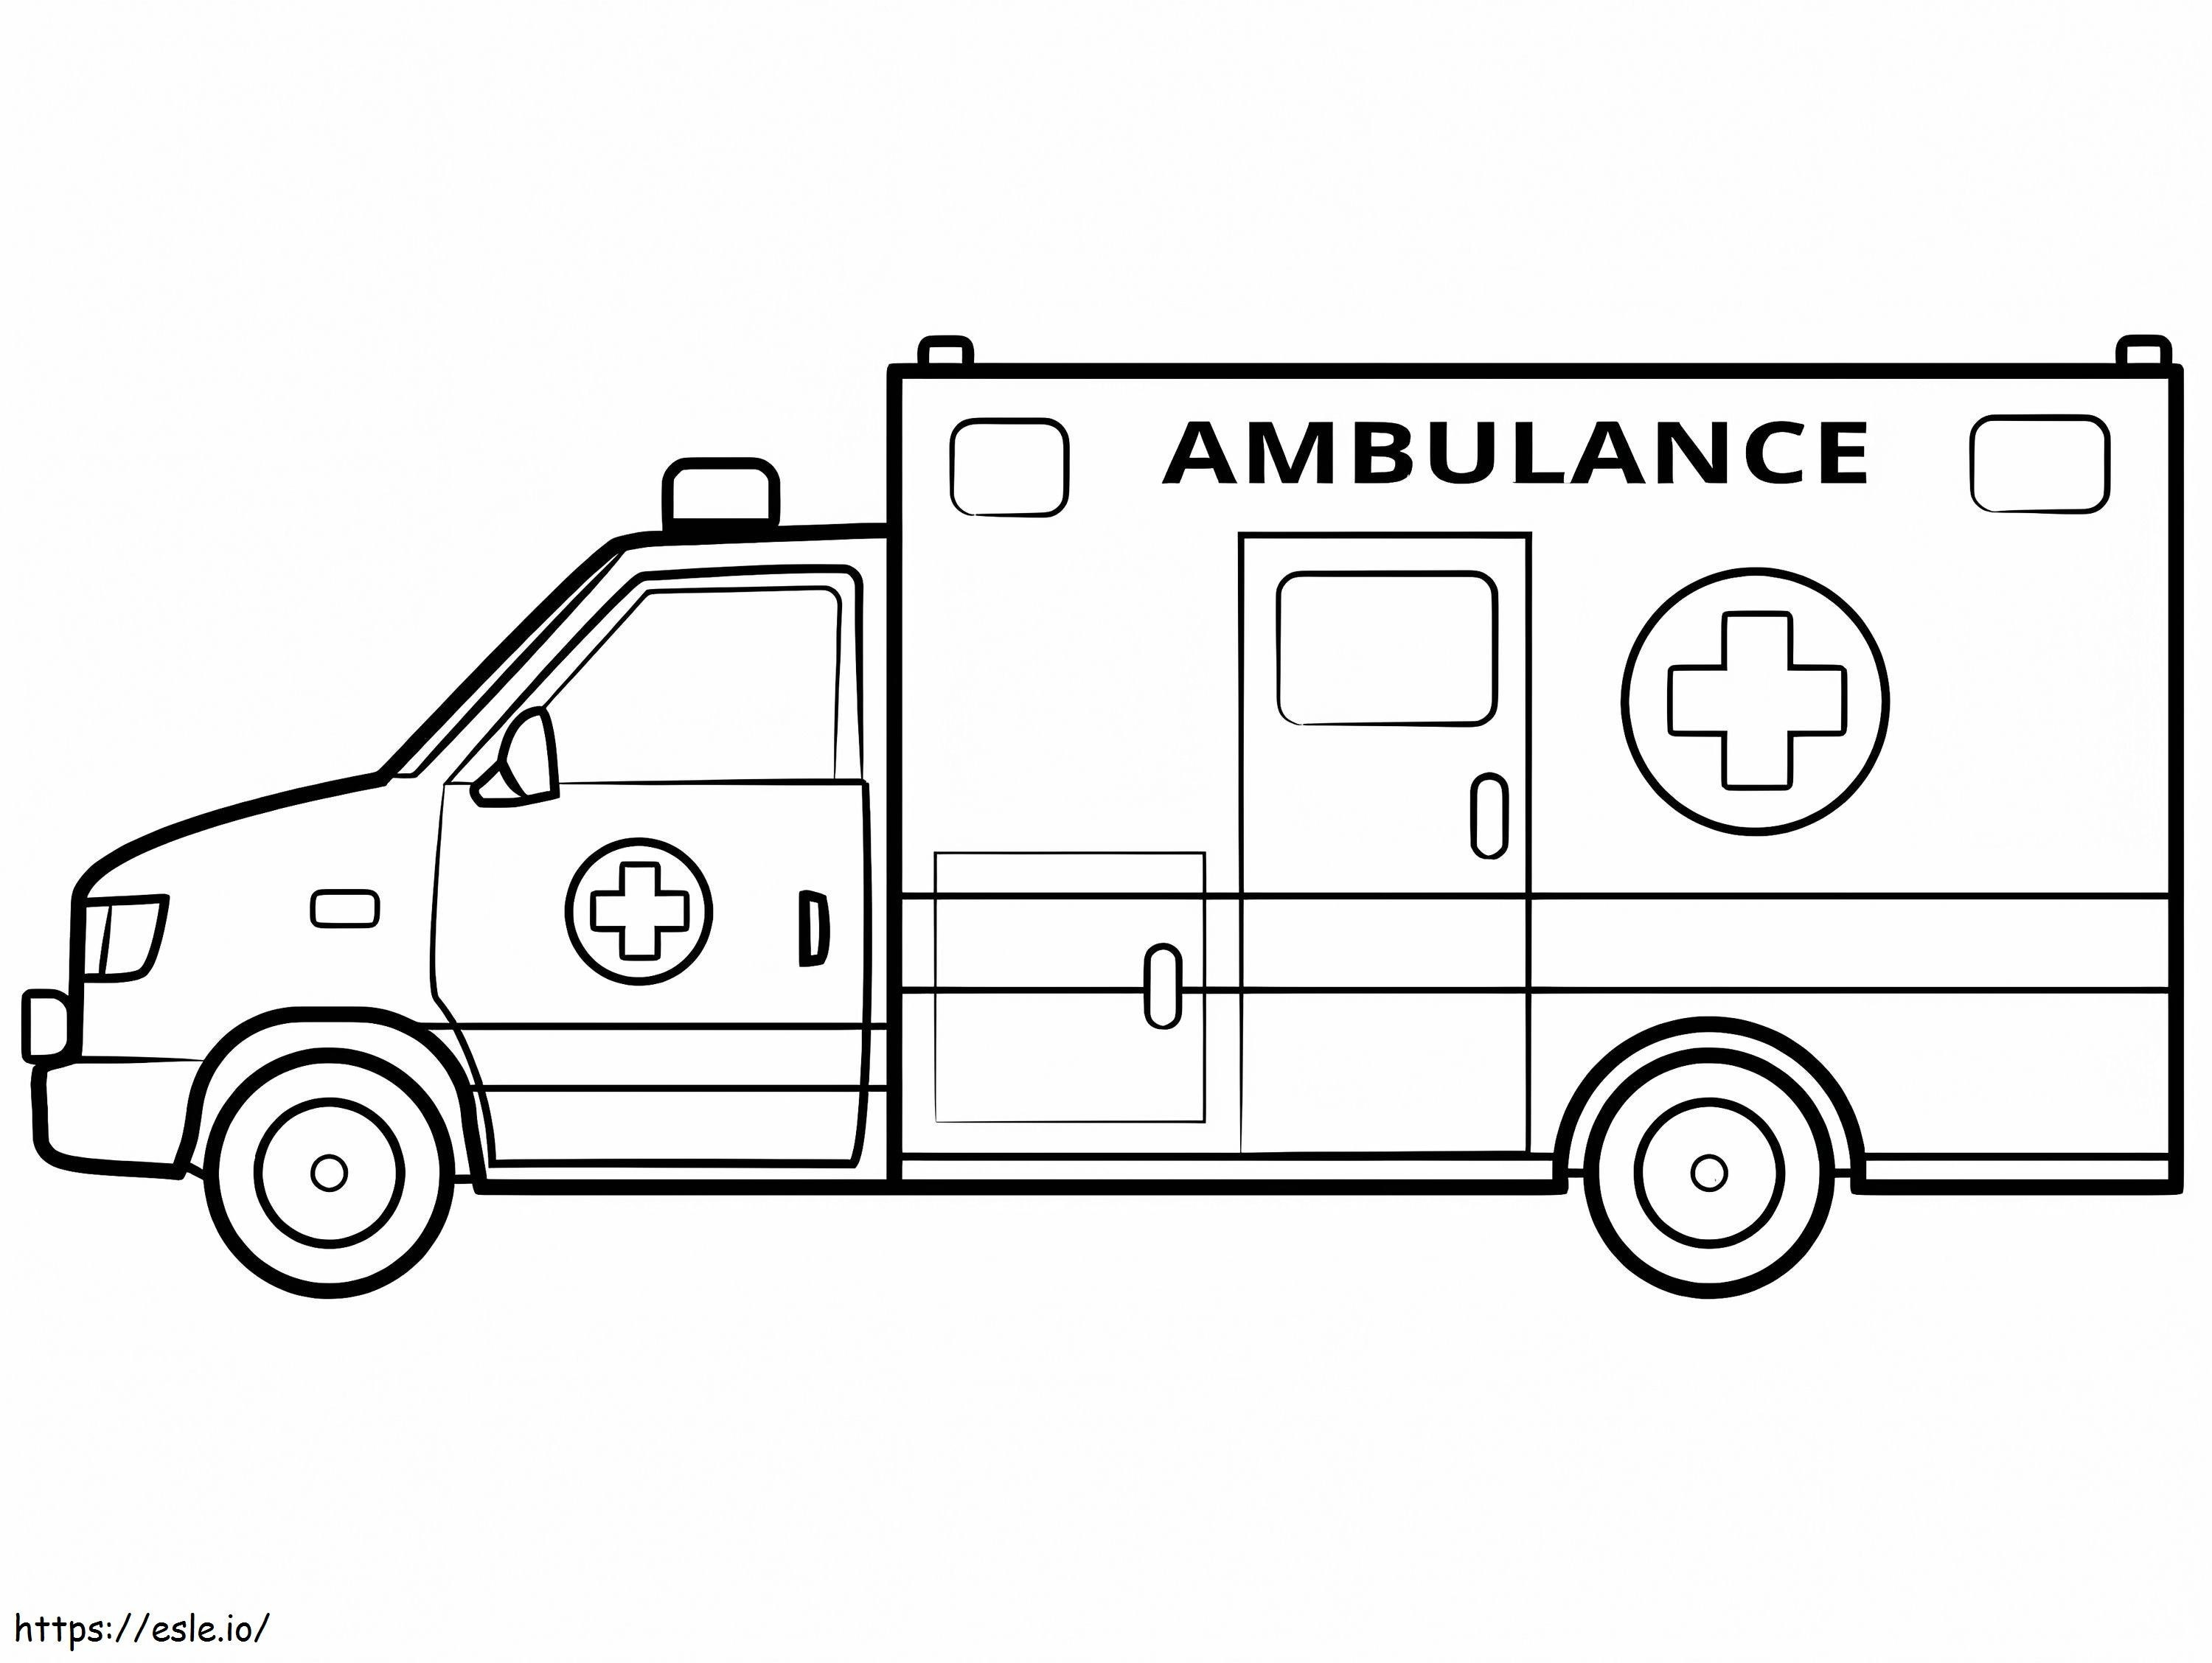 Ambulance 16 coloring page